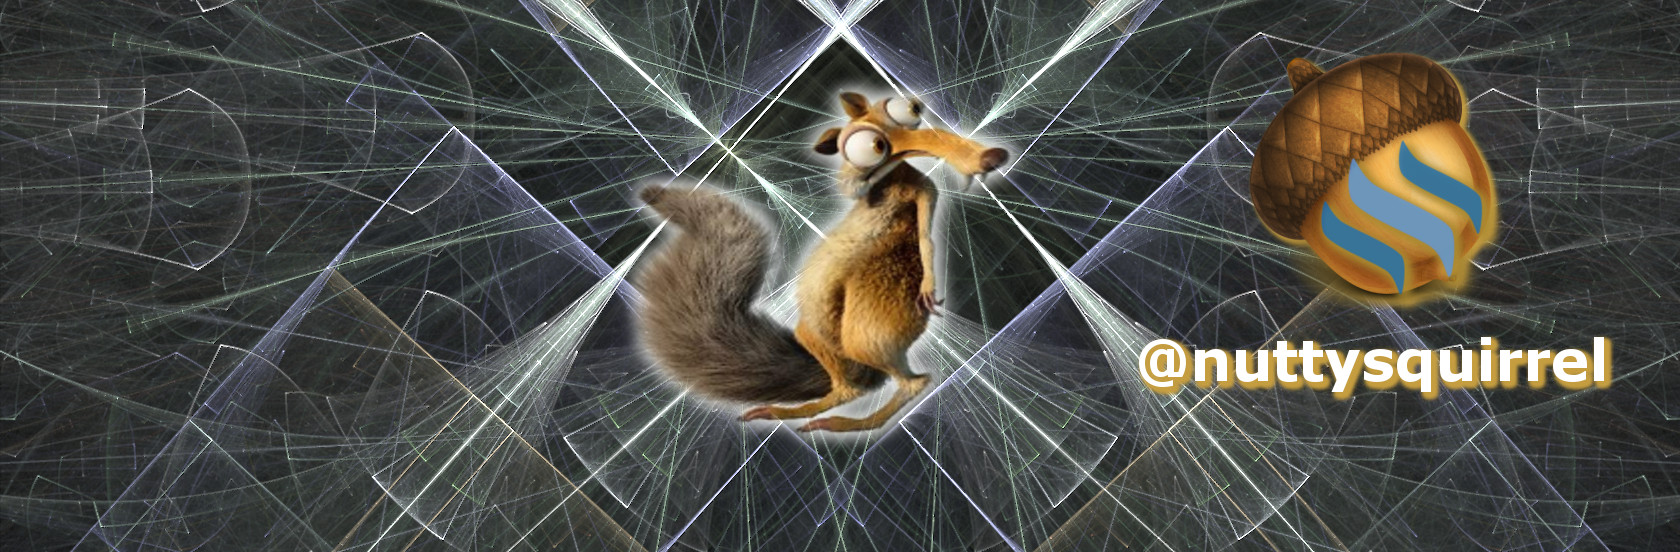 squirrel banner.jpg